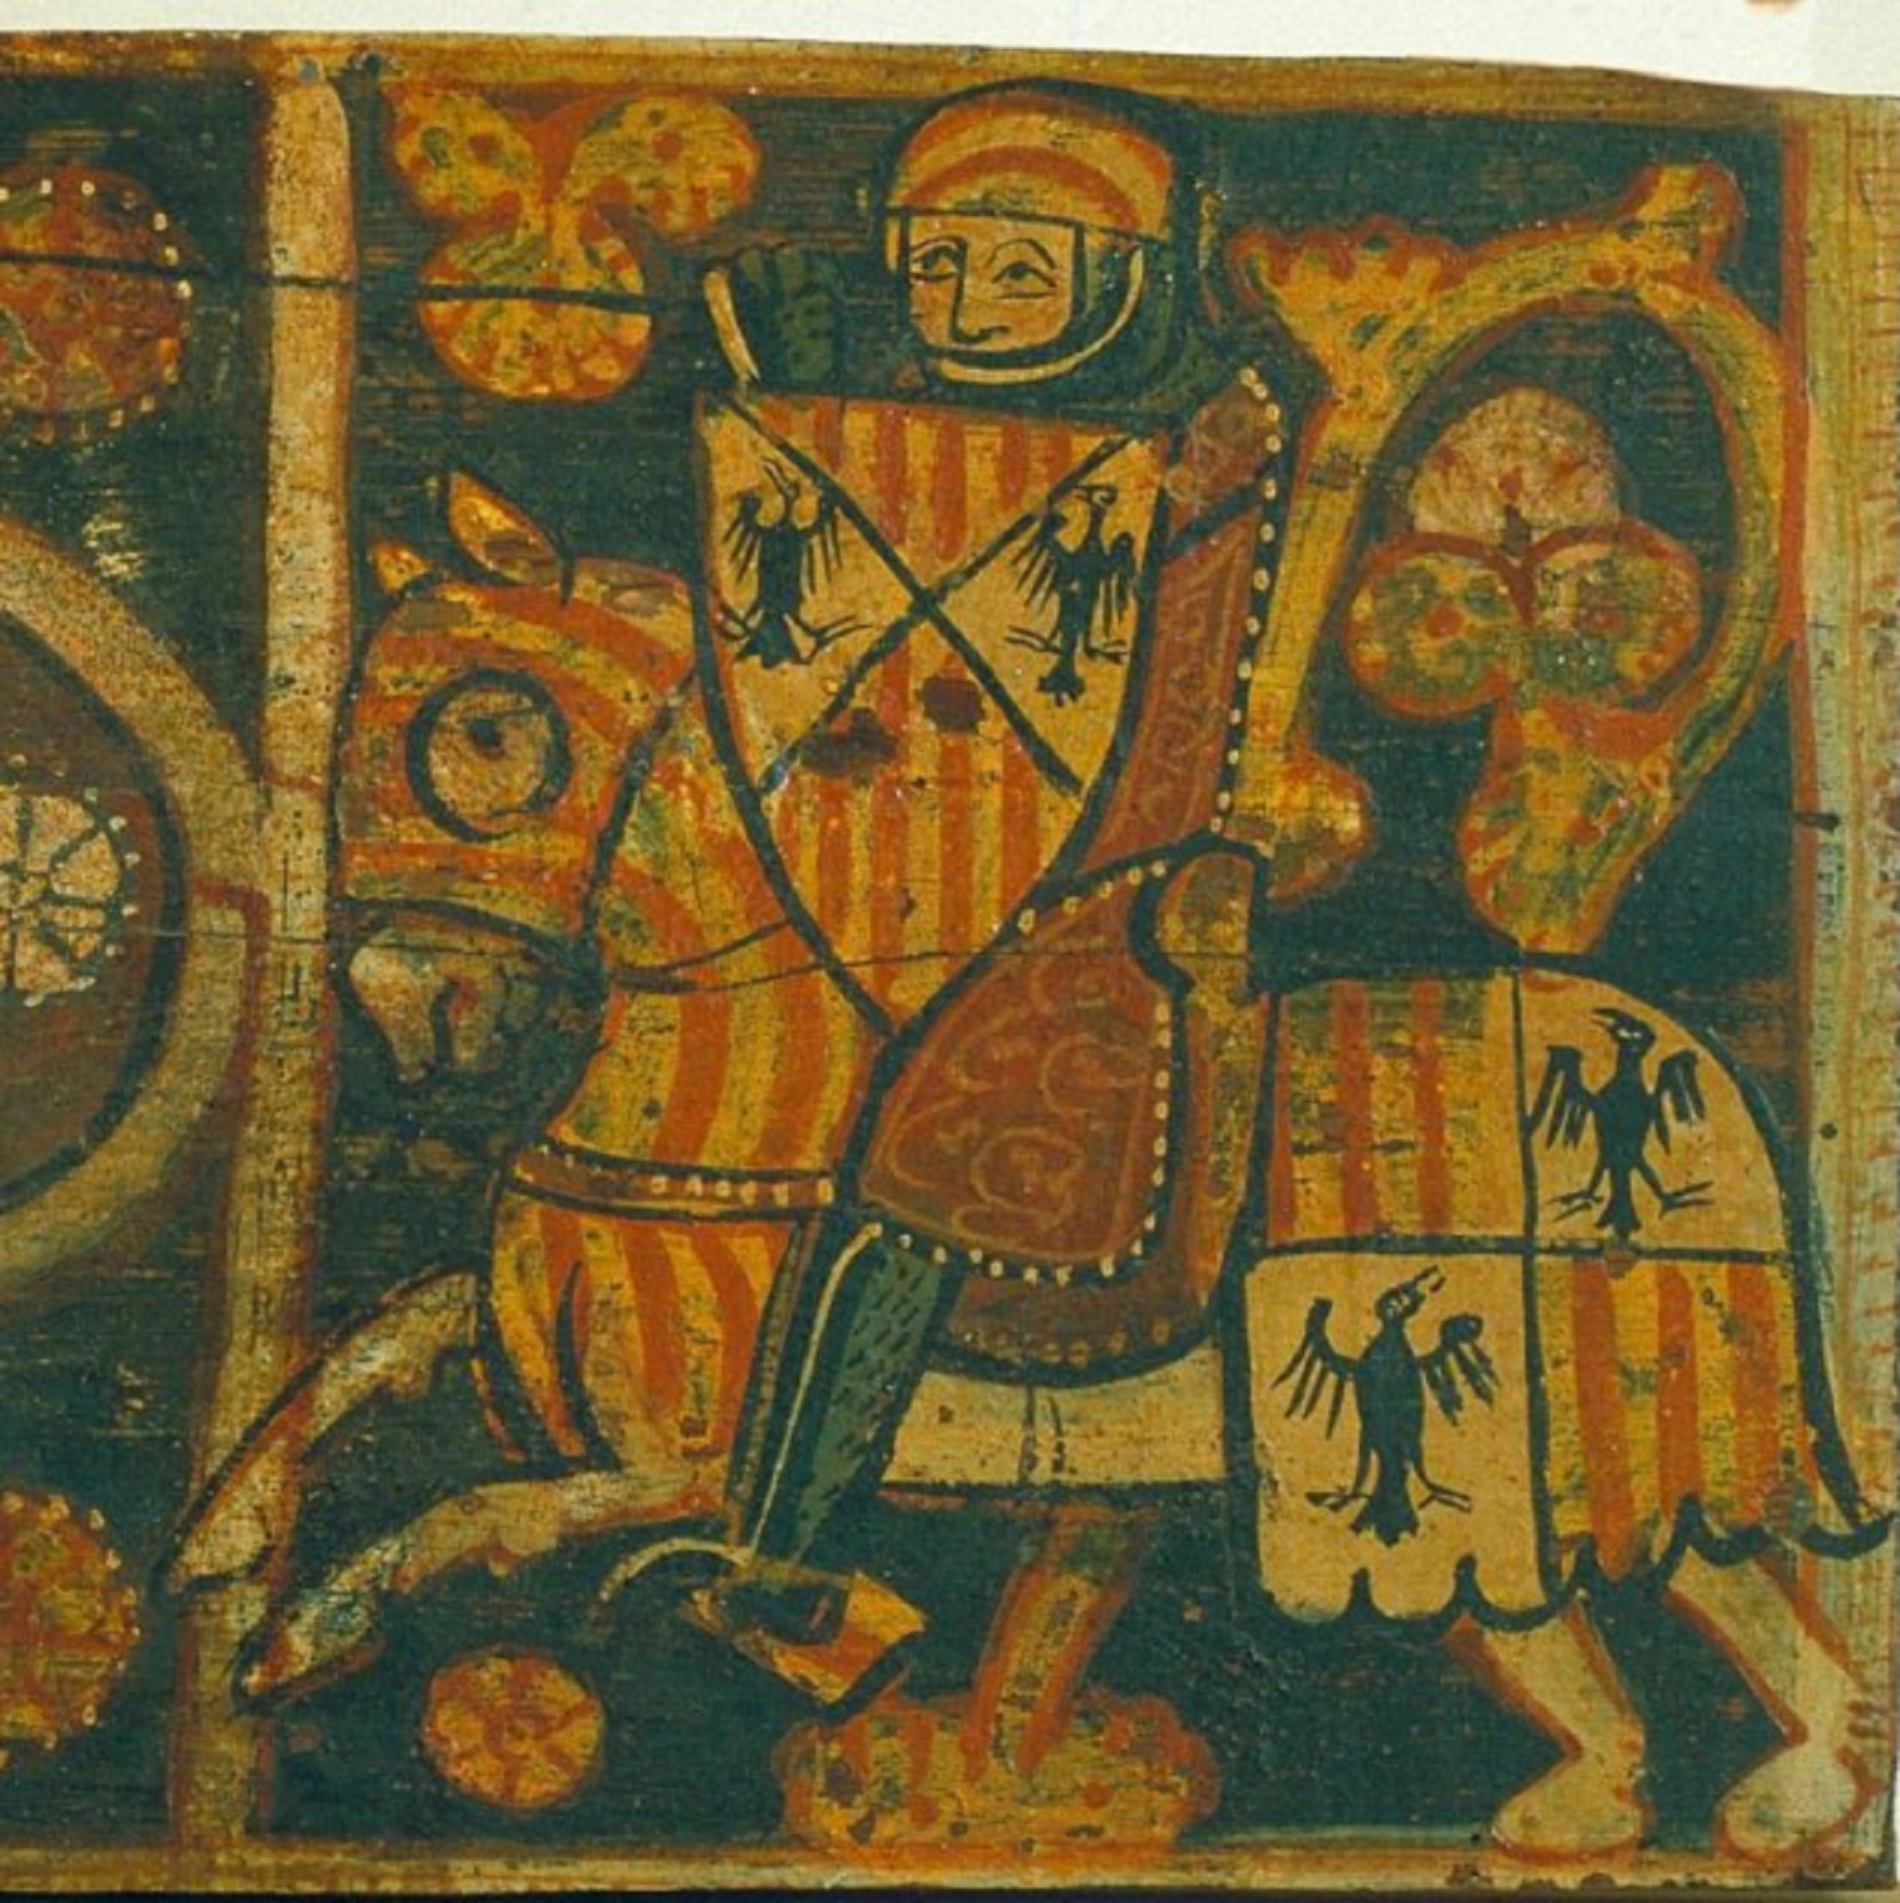 Caballero con las armas de l'Aliga Hohenstaufen (Sicilia) y la Señal Real (Catalunya y Aragón). Fuente Museu Nacional d'Art de Catalunya